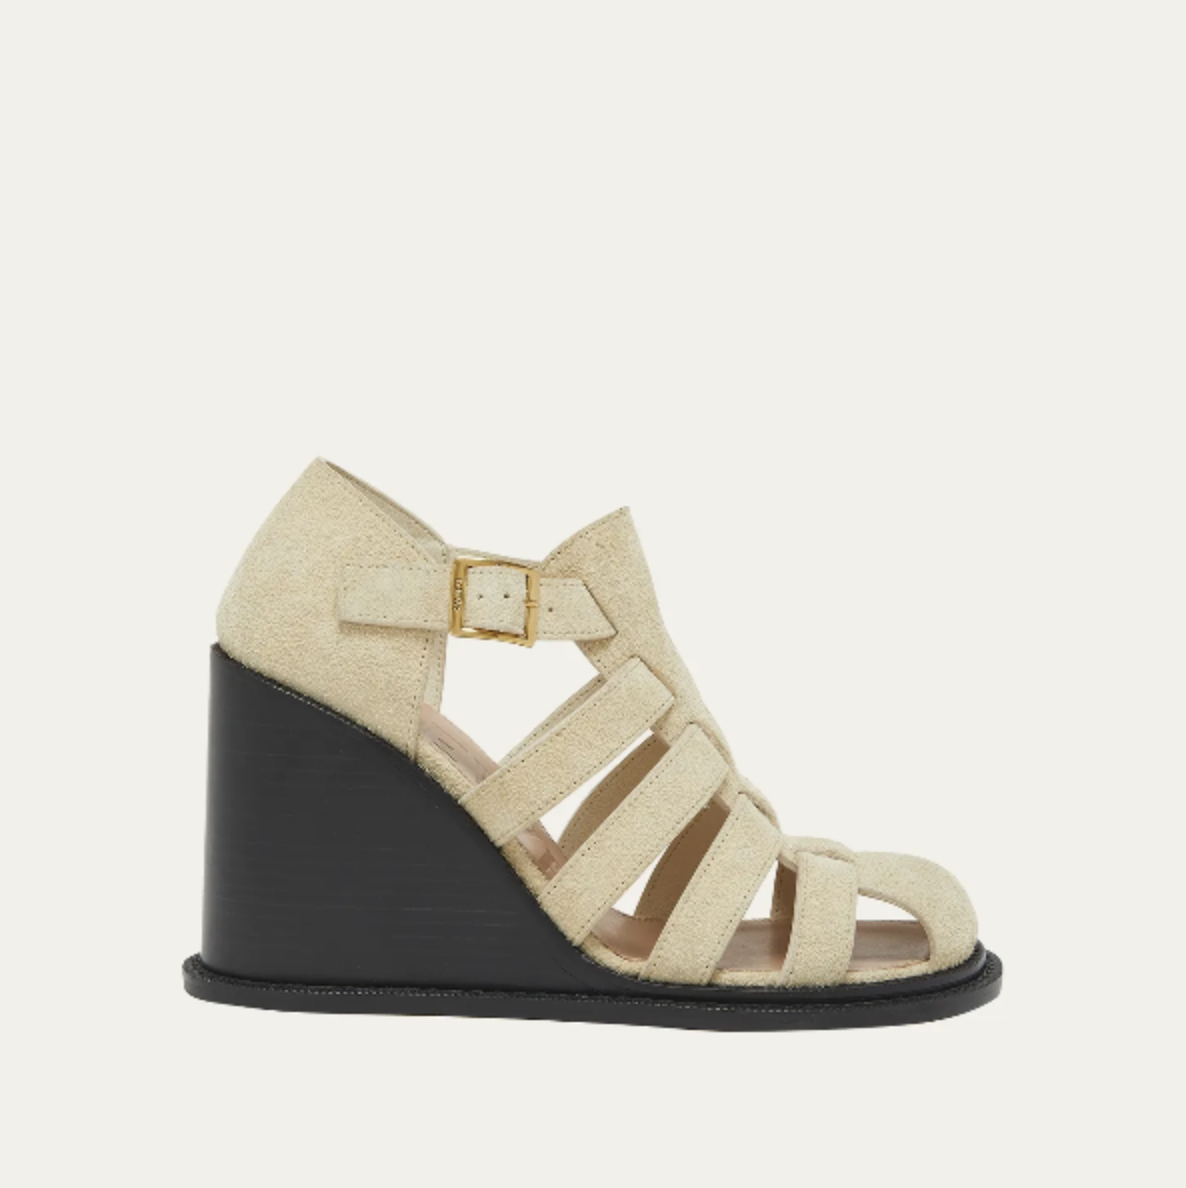 Buy Rocia Black Women Wedge Heel Sandals Online at Regal Shoes |8071569